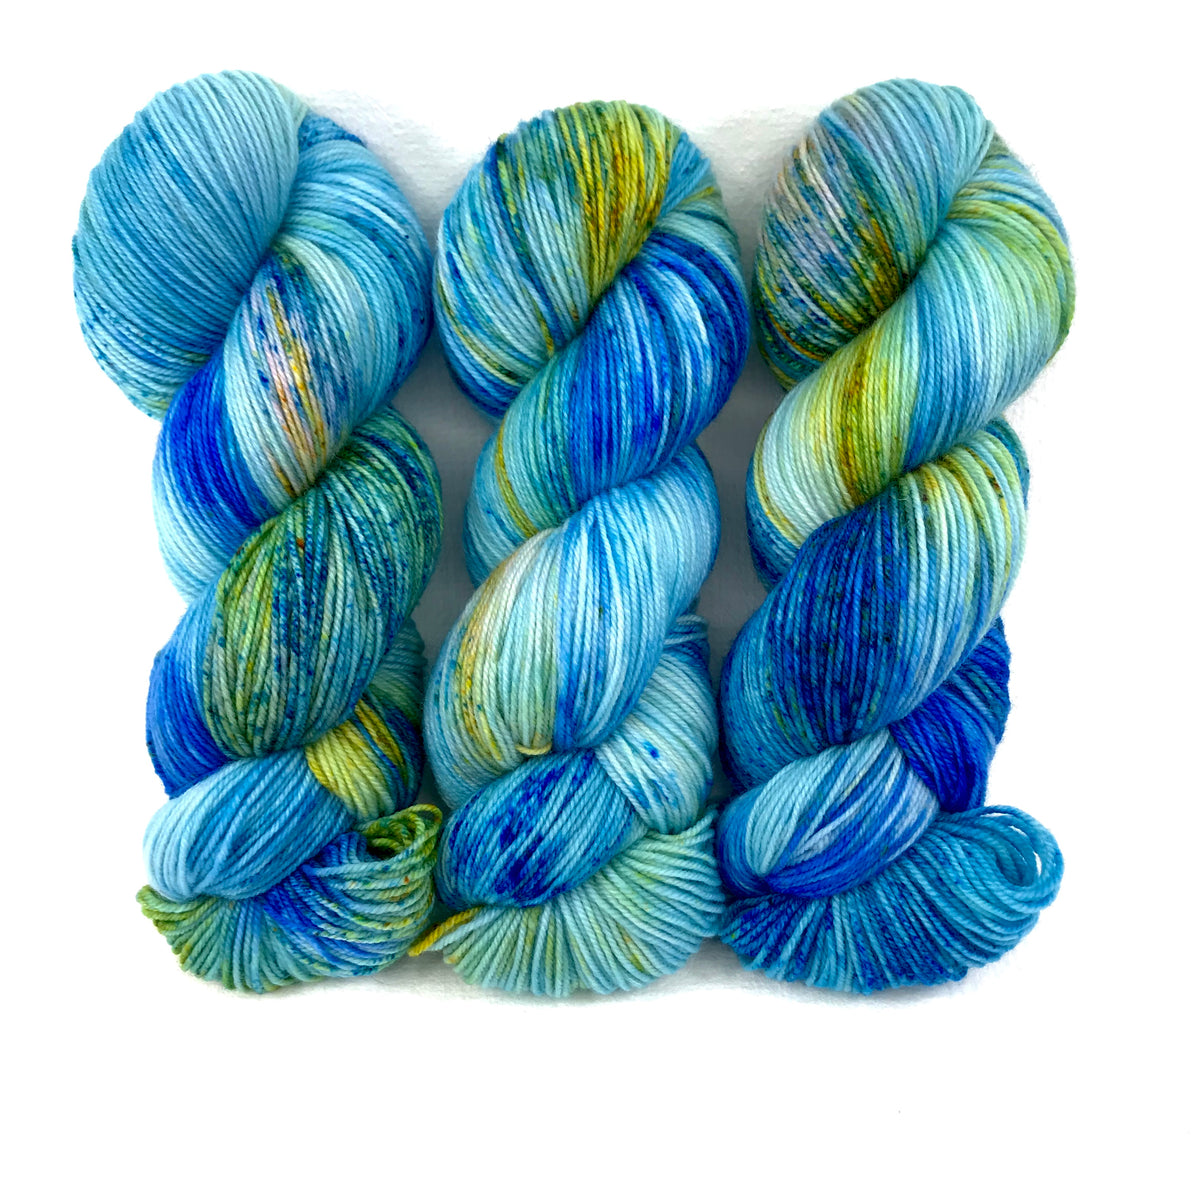 Blue Poppy - Merino DK / Light Worsted - Dyed Stock